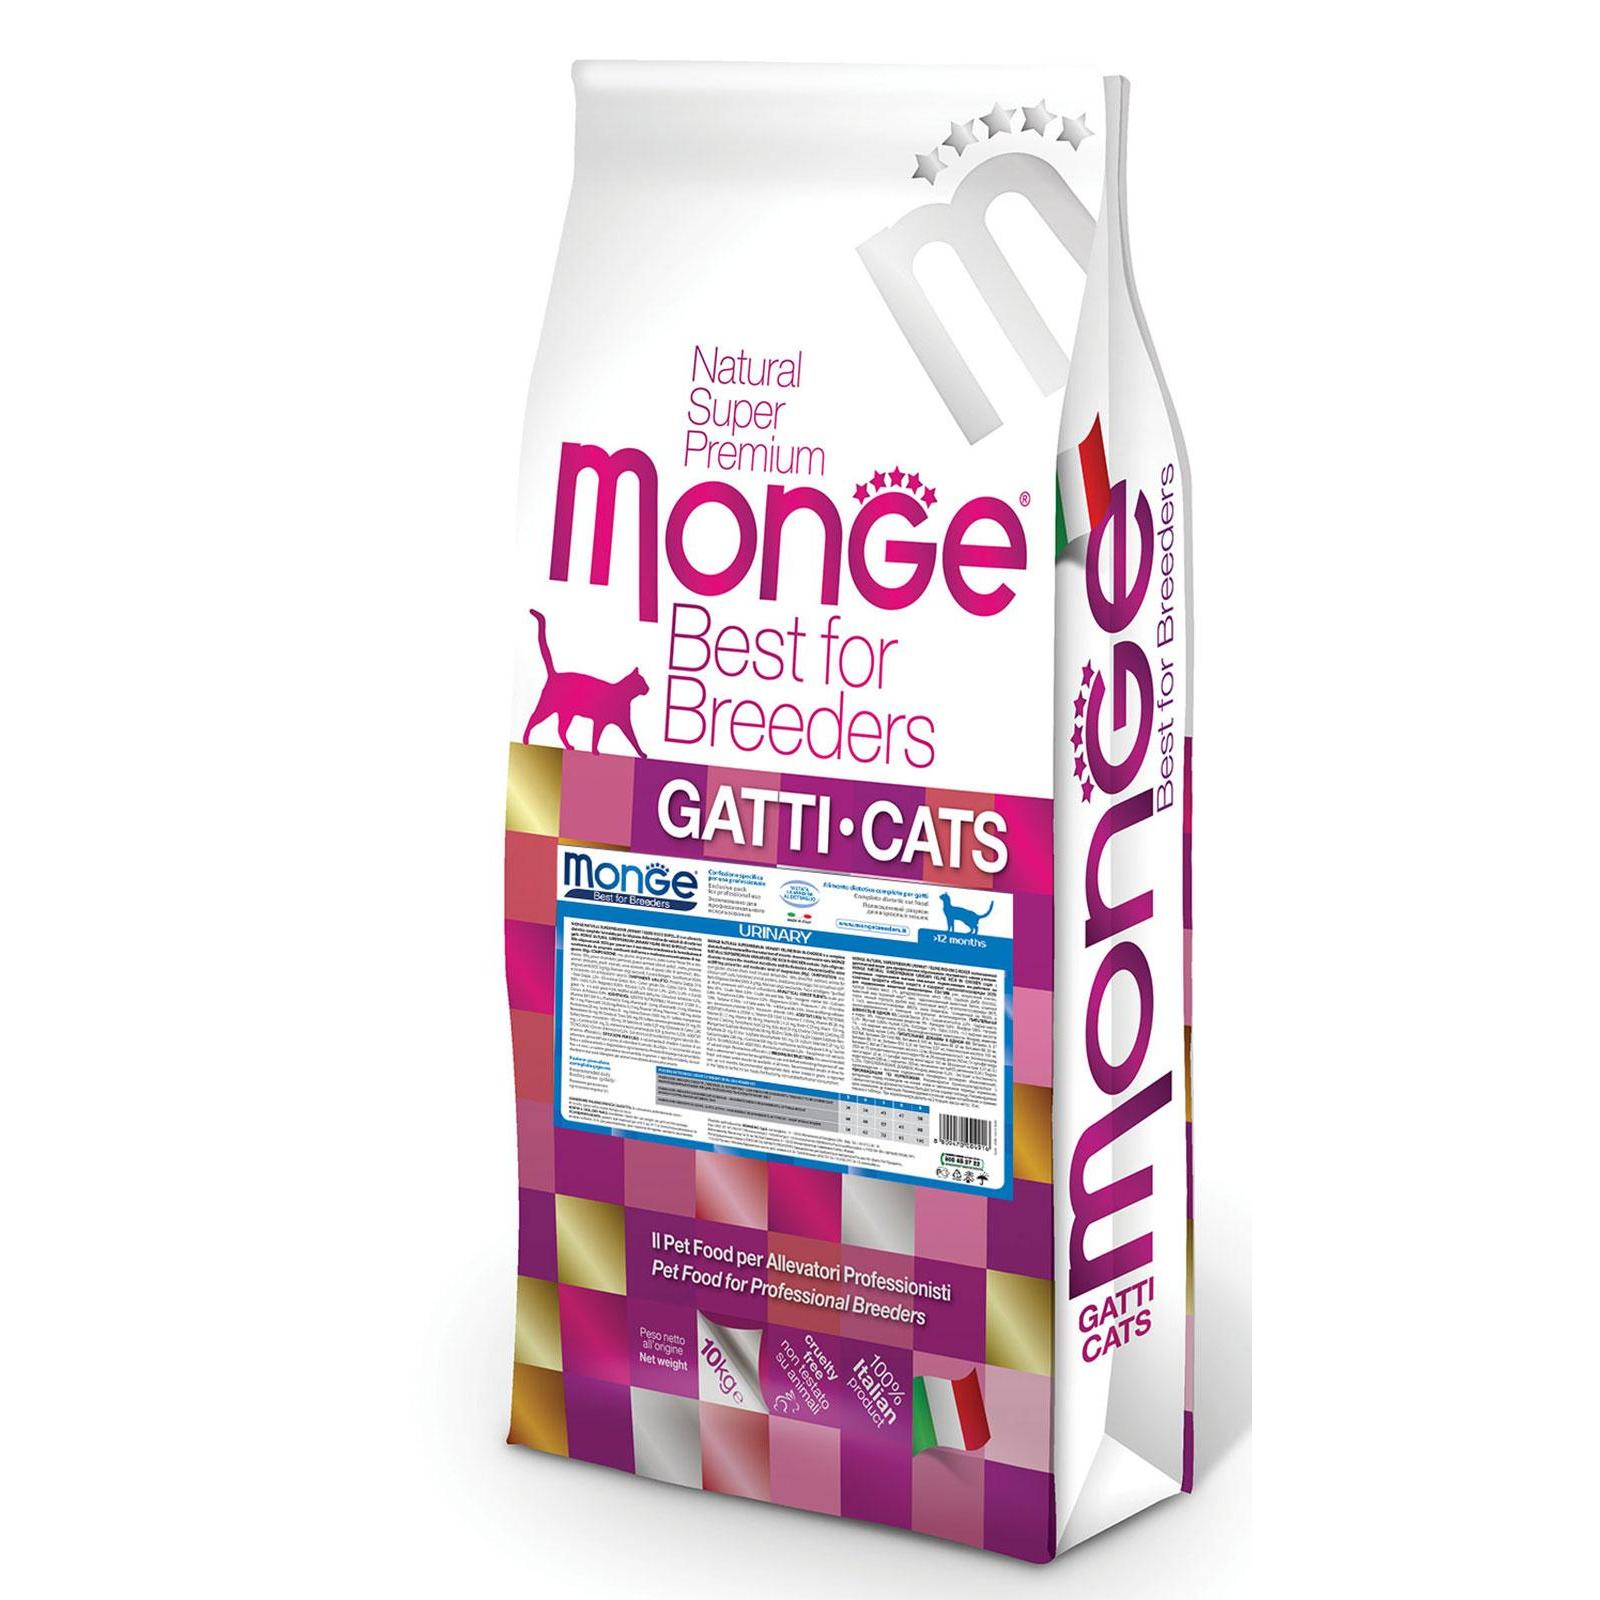 Monge natural. Monge PFB Sterilised сухой корм для кошек 10 кг. Monge Sterilised Cat 10 кг. Сухой корм Monge Cat Daily line. Monge Cat PFB Daily line Urinary 10 кг.